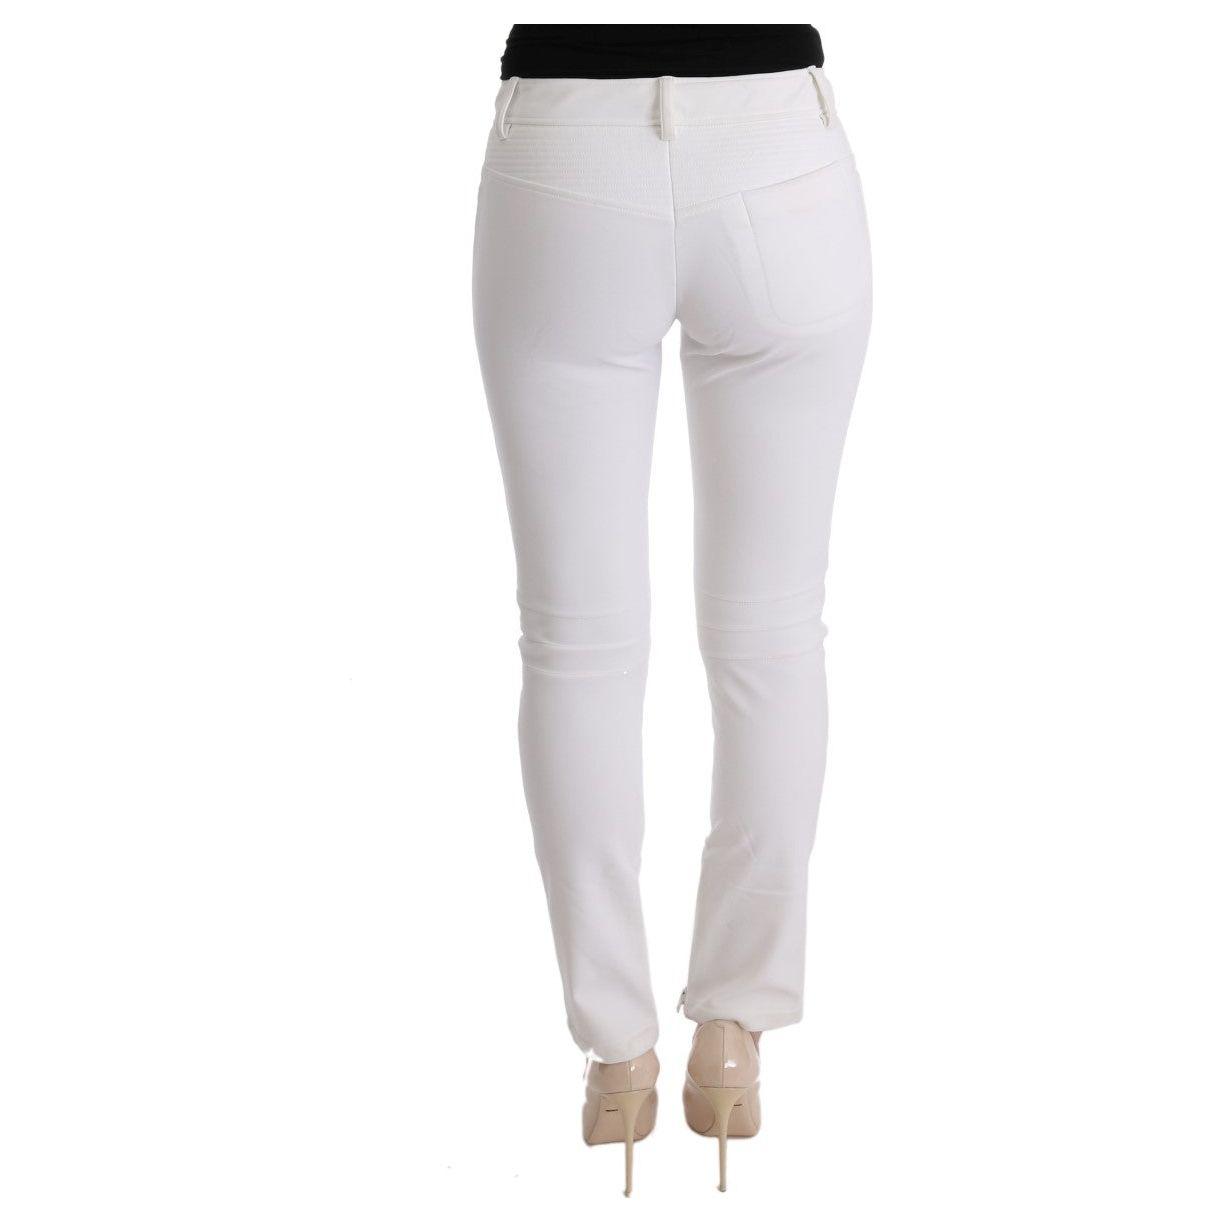 Ermanno Scervino Chic White Slim Fit Cotton Trousers white-cotton-slim-fit-casual-pants-2 449222-white-cotton-slim-fit-casual-pants-3-2.jpg